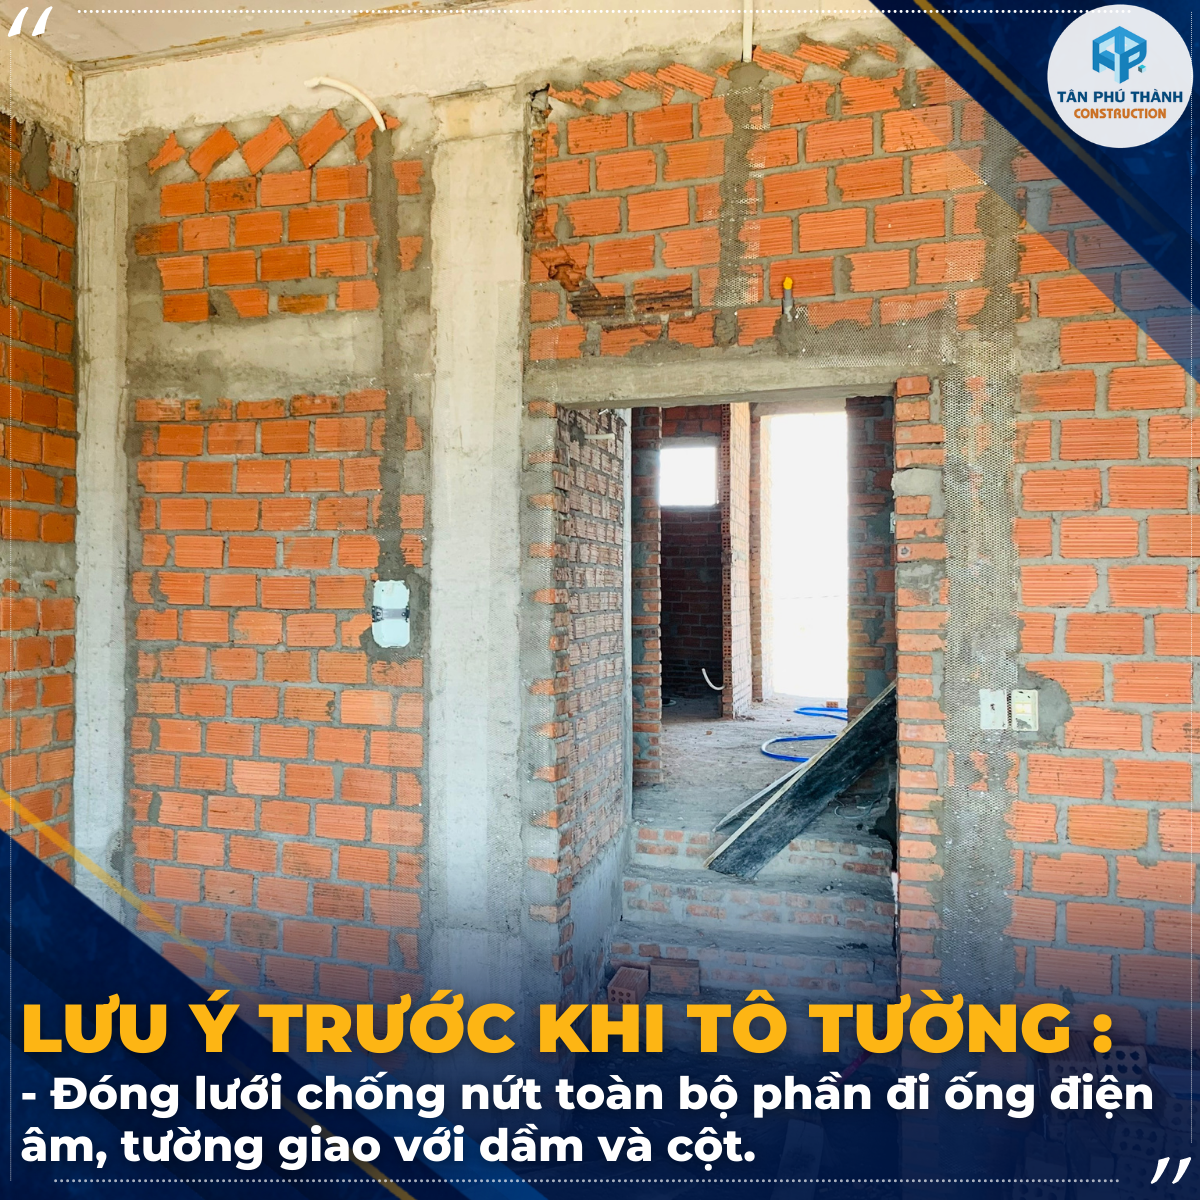 đơn vị thi công xây nhà trọn gói uy tín Đà Nẵng